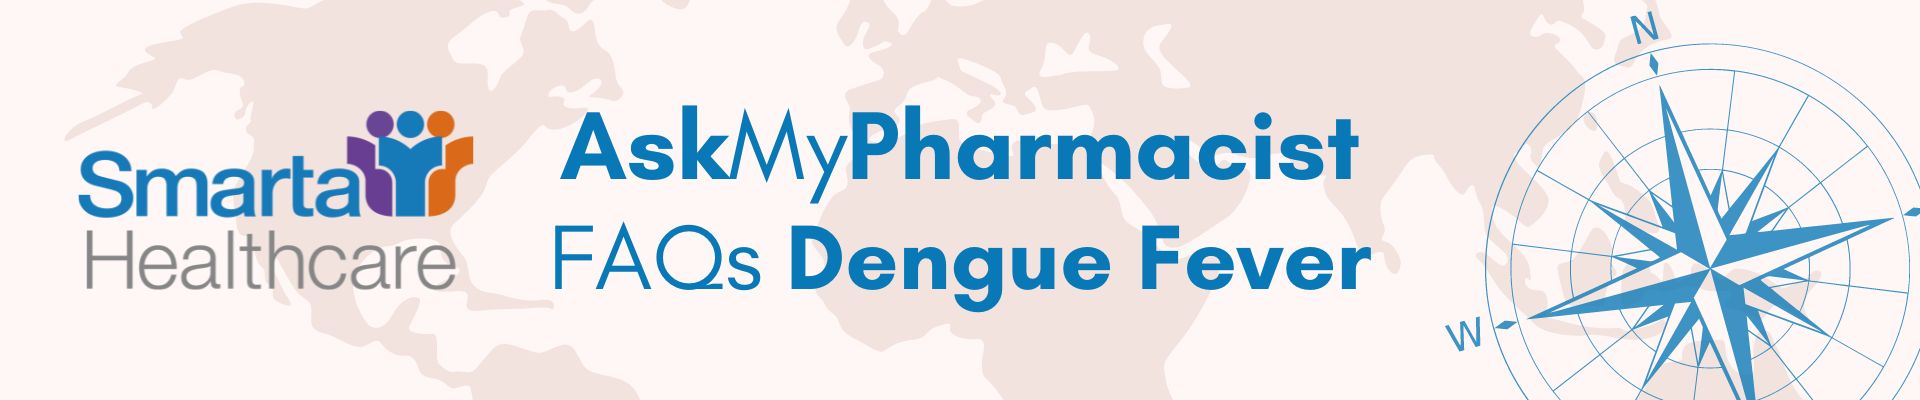 AskMyPharmacist FAQs Dengue Fever